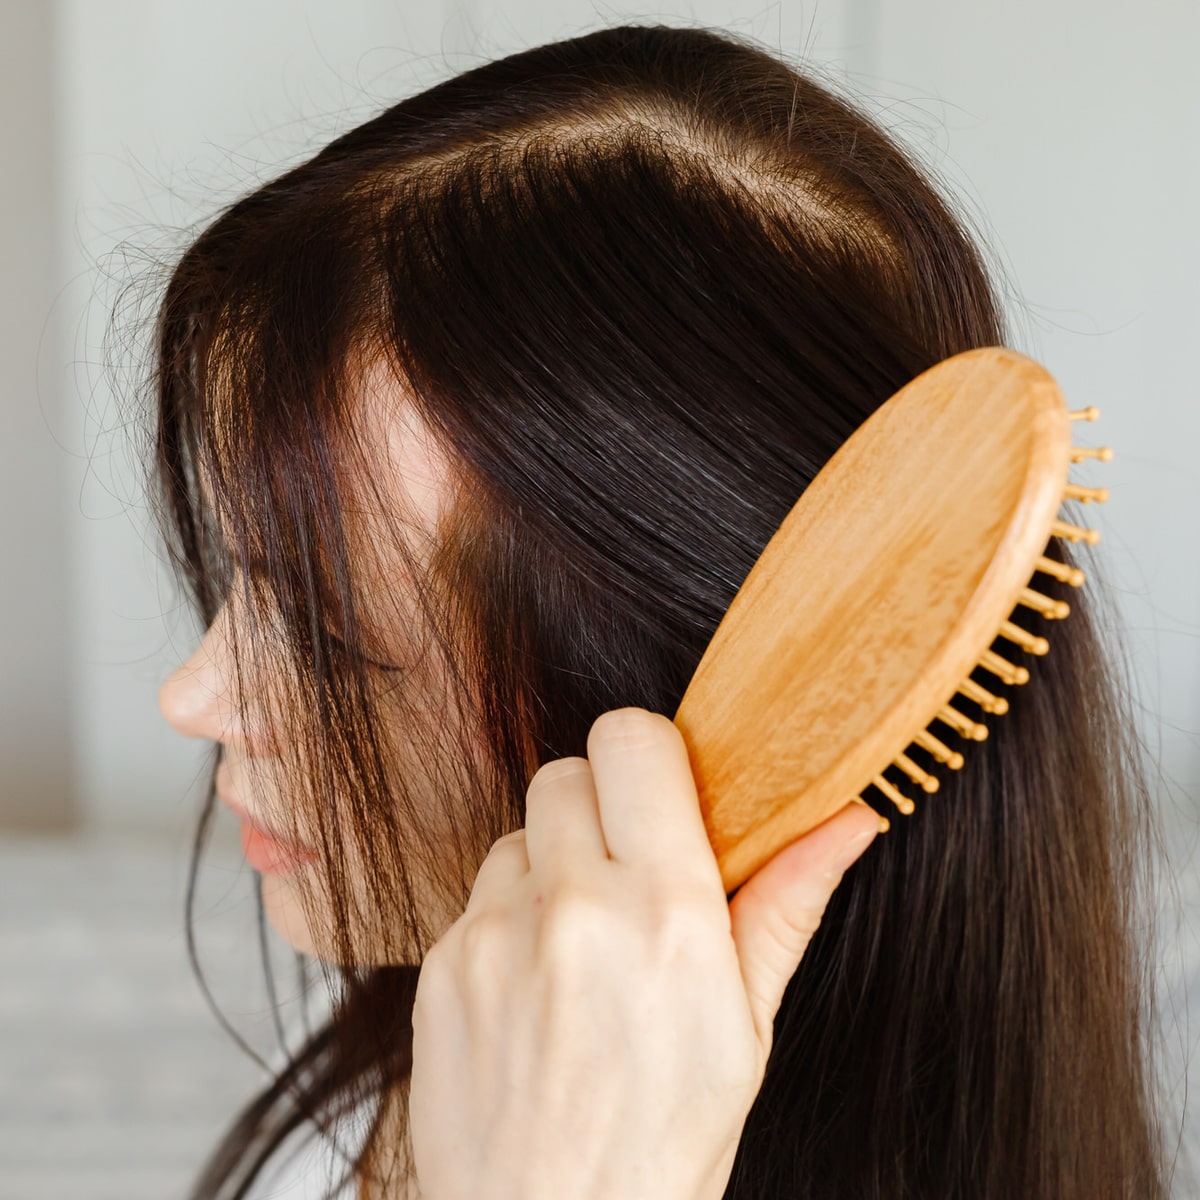 Wie kann ich Haarverlust stoppen? Hilfreiche Tipps gegen Haarausfall